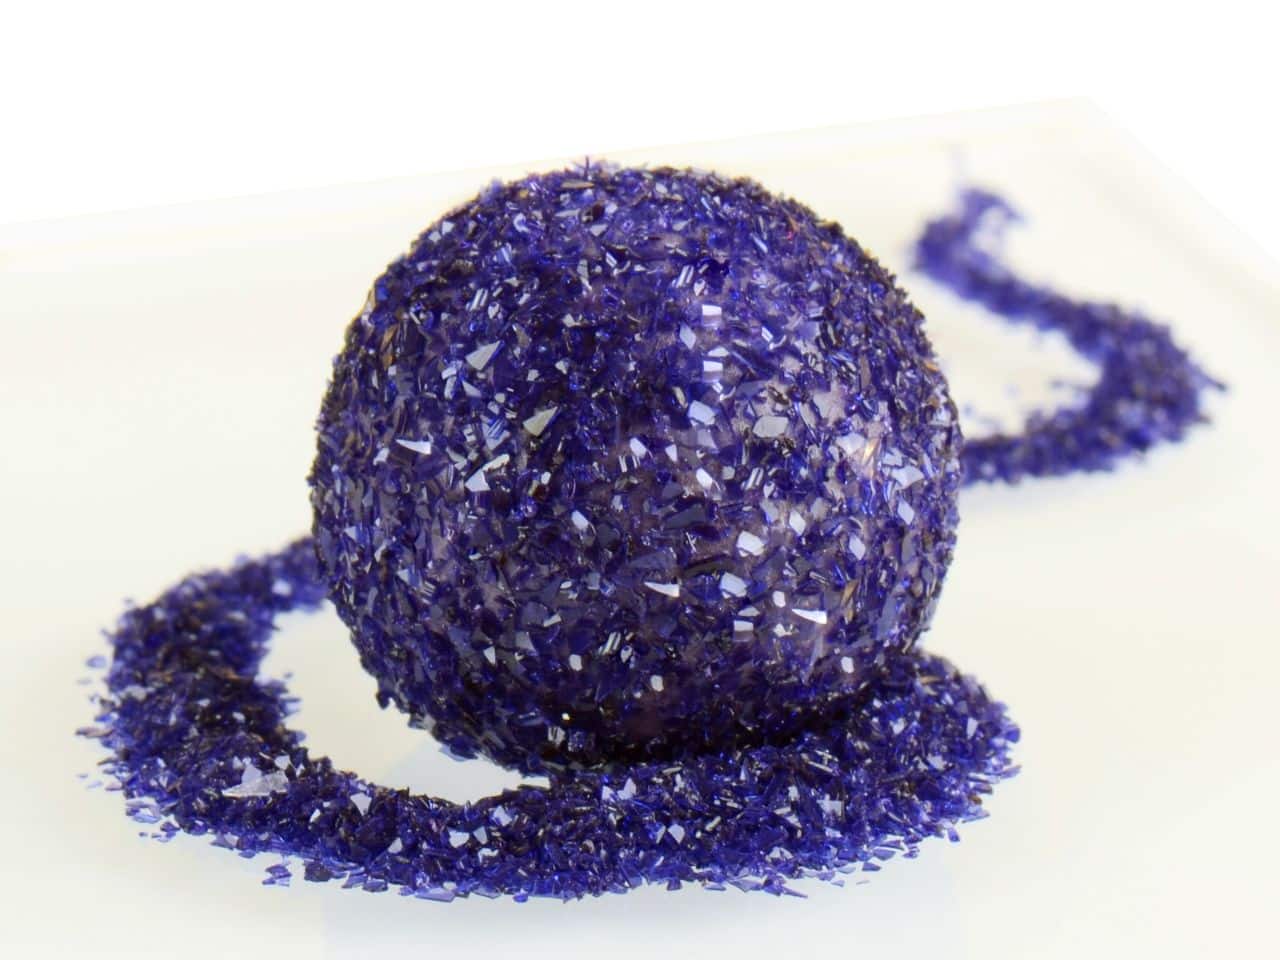 Glitzerpulver essbar purple - violett 5 g V01